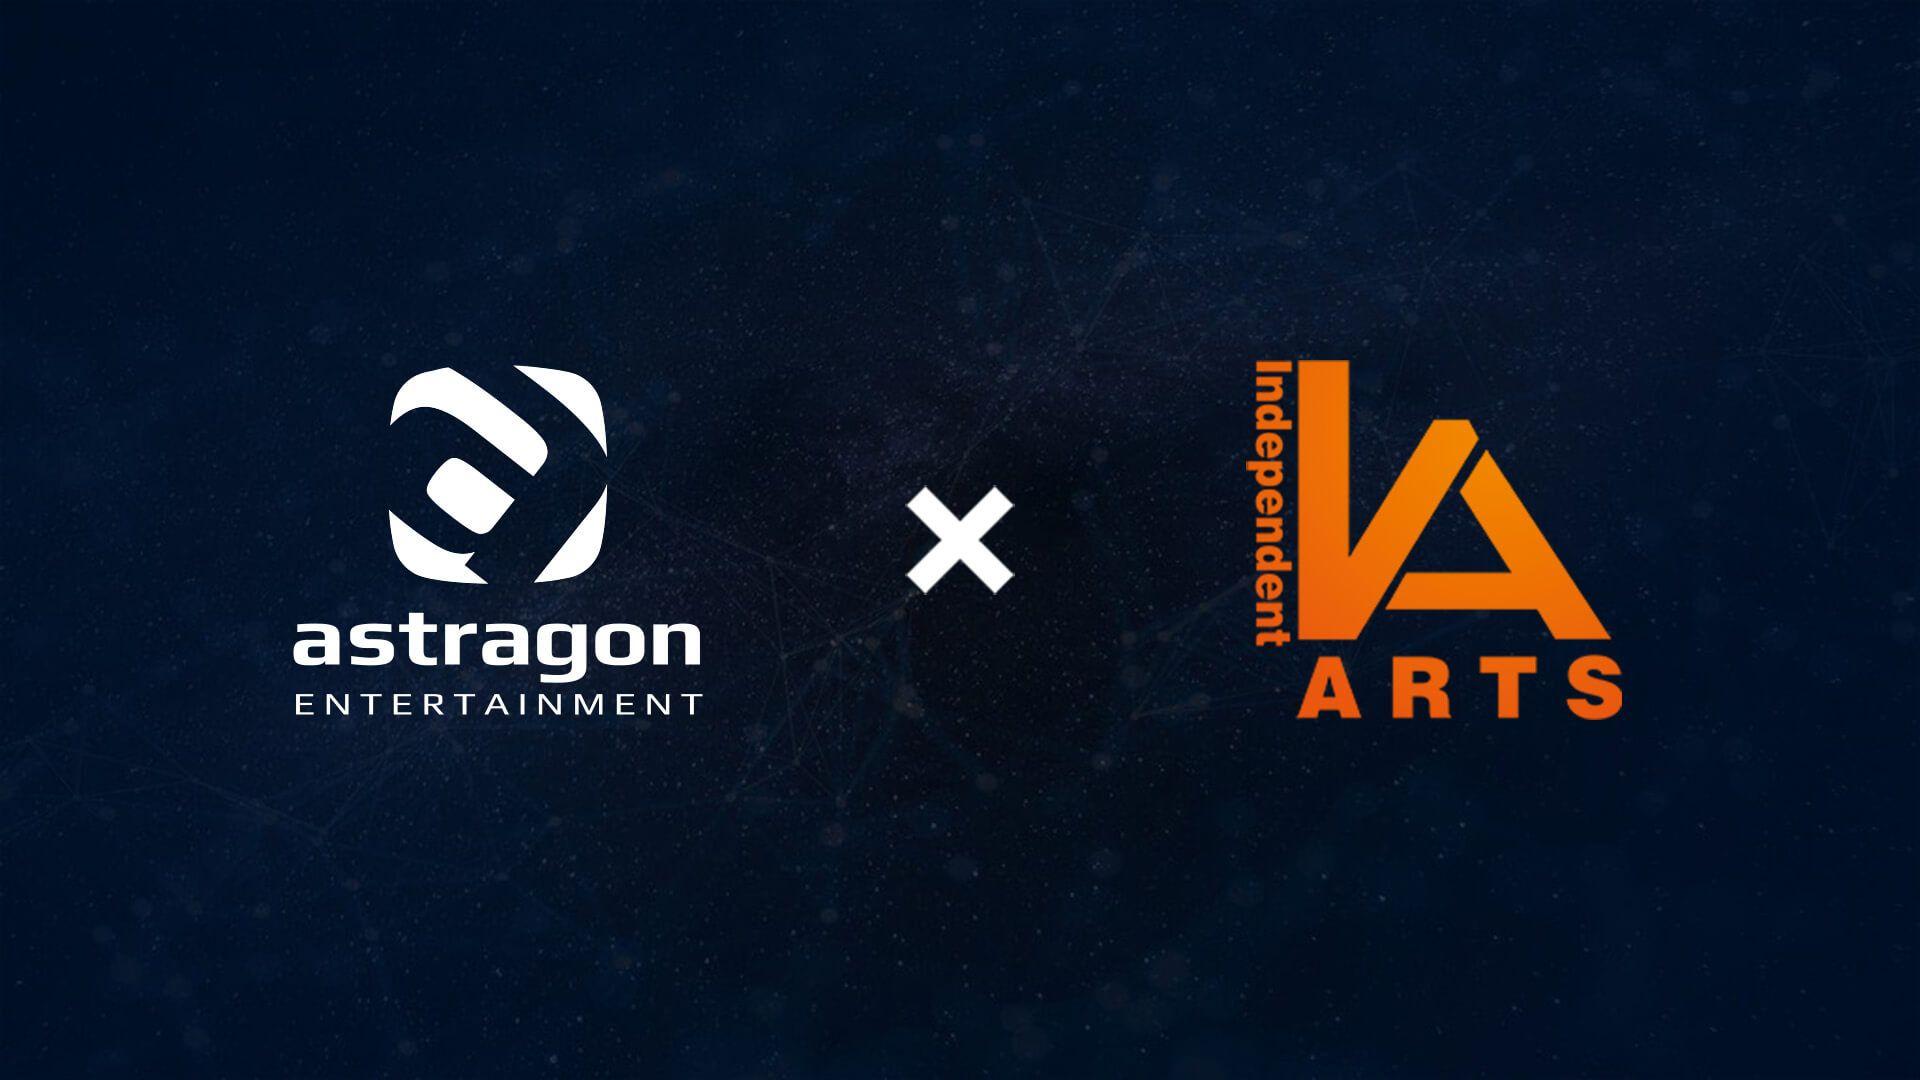 astragon Entertainment übernimmt Independent Arts Software, eines der traditionsreichsten Entwicklerstudios in Deutschland